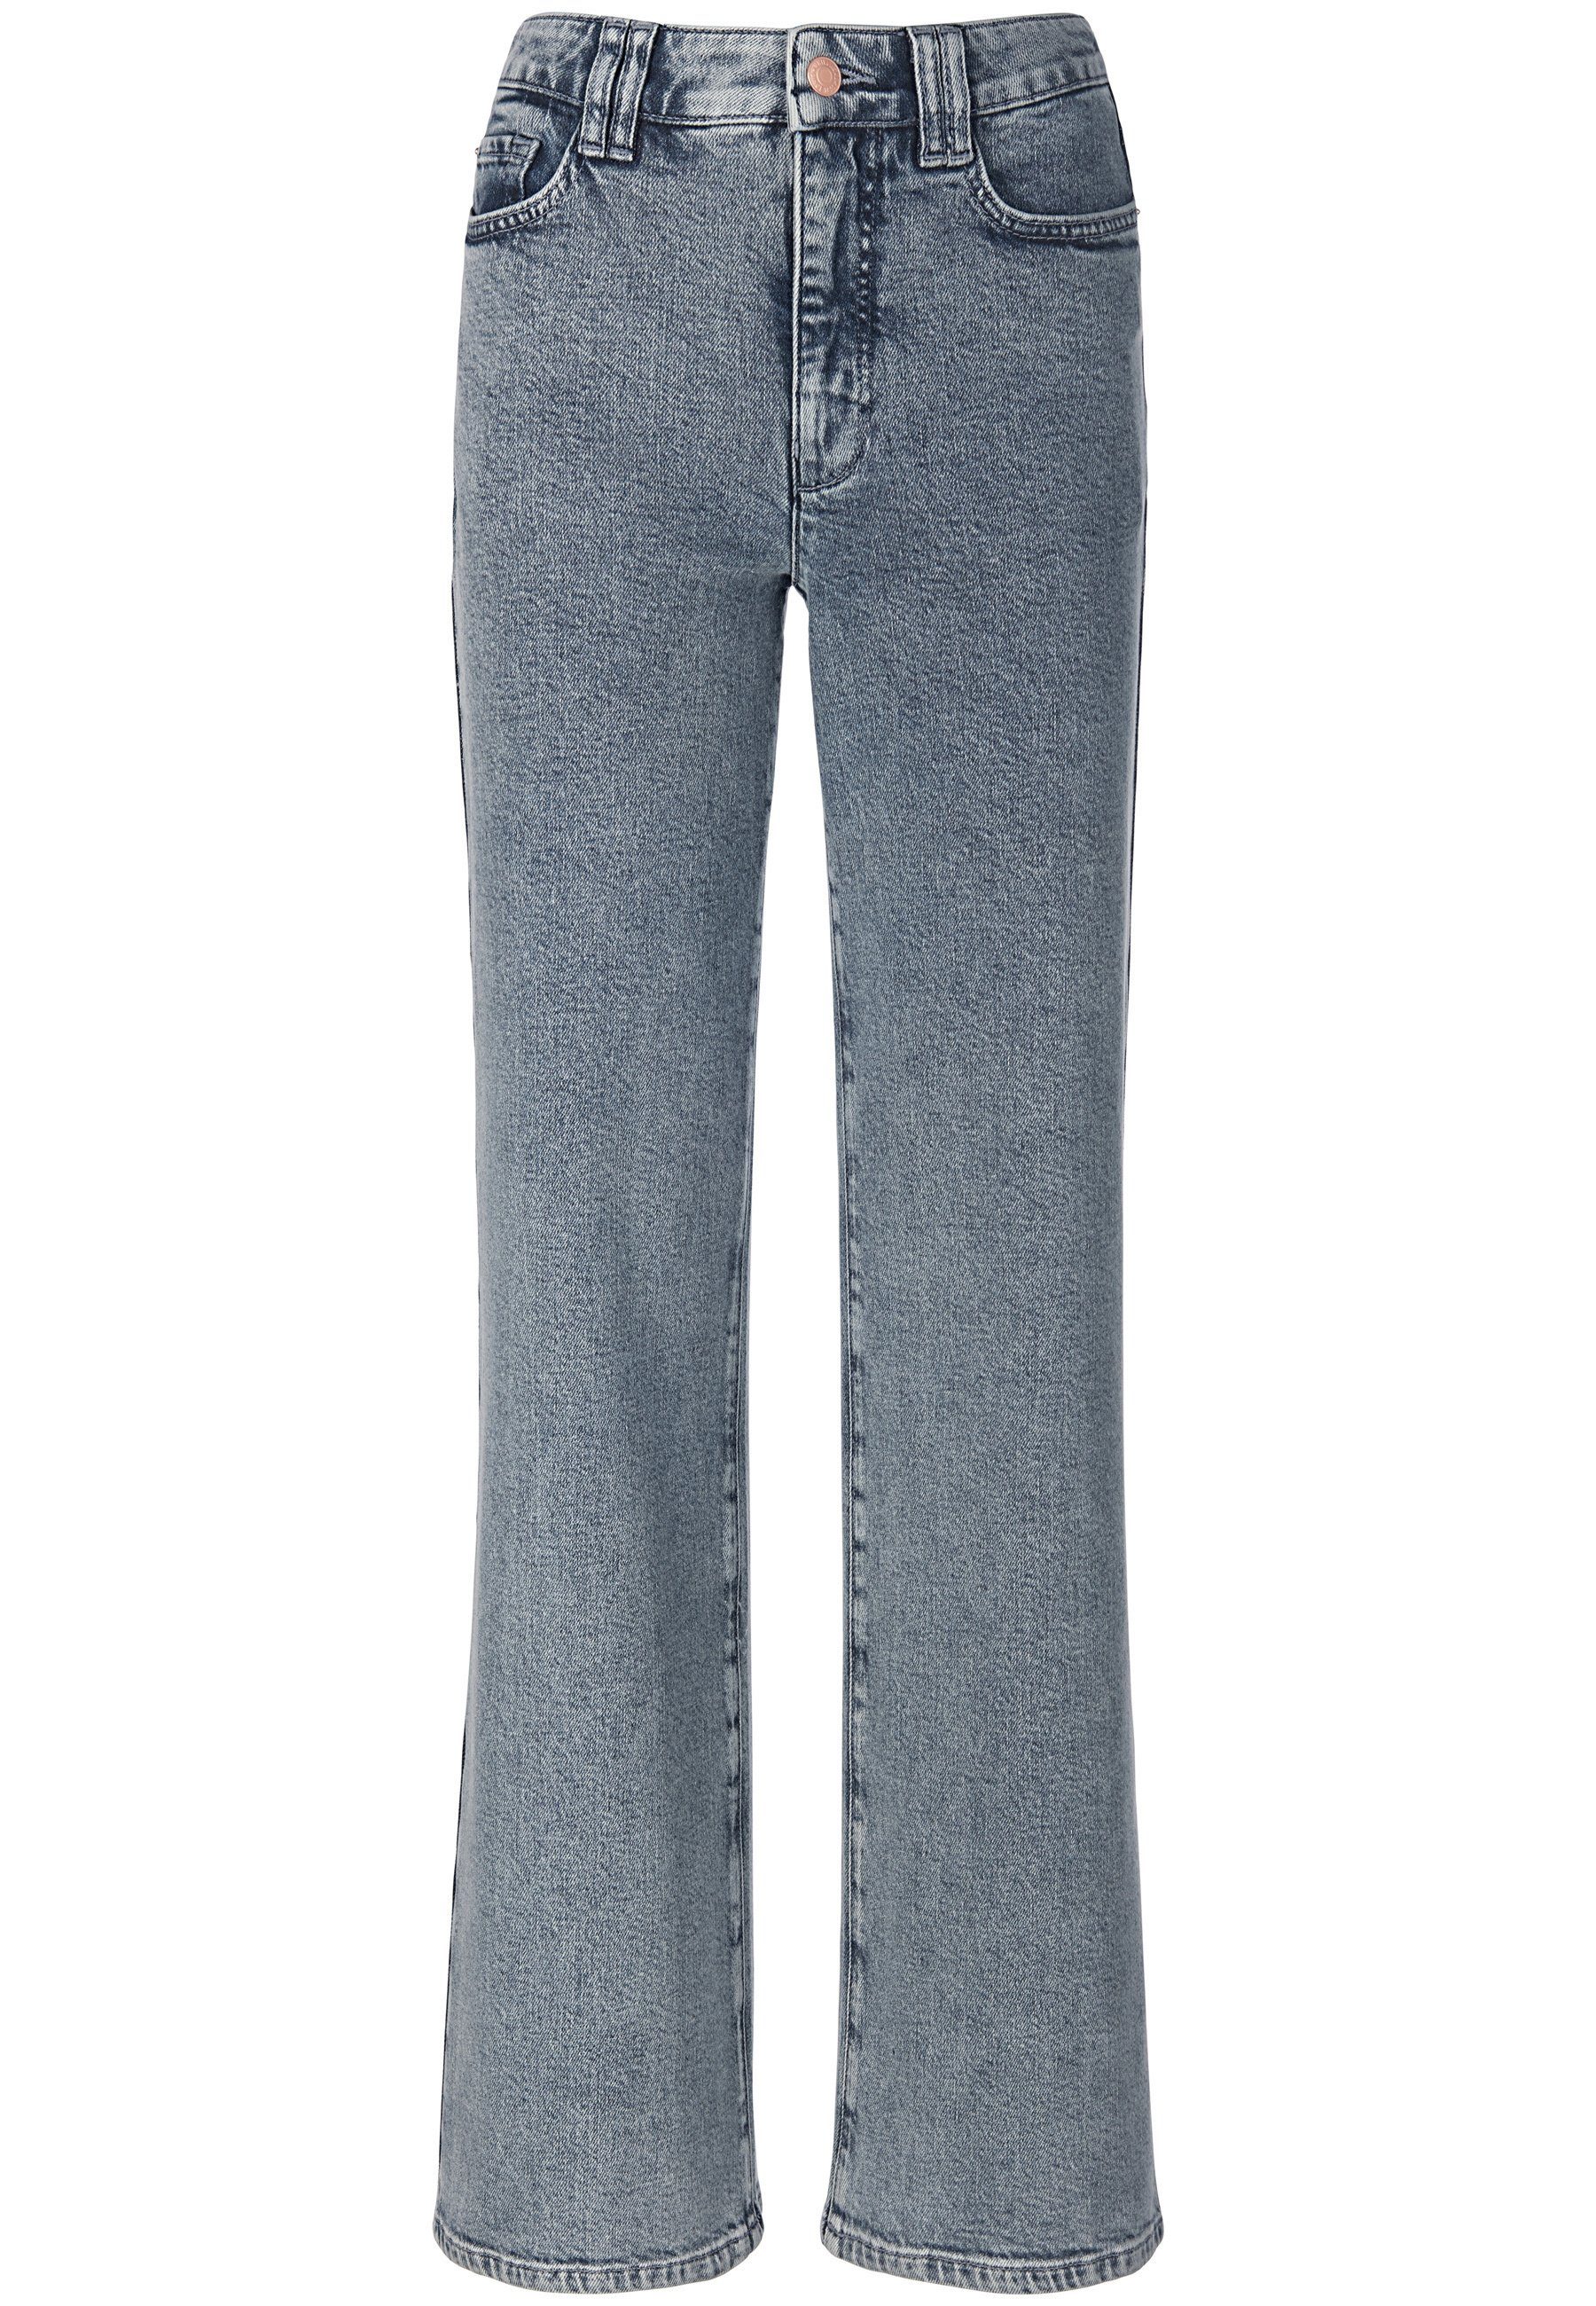 Taschen Cotton DAY.LIKE mit 5-Pocket-Jeans hellblau